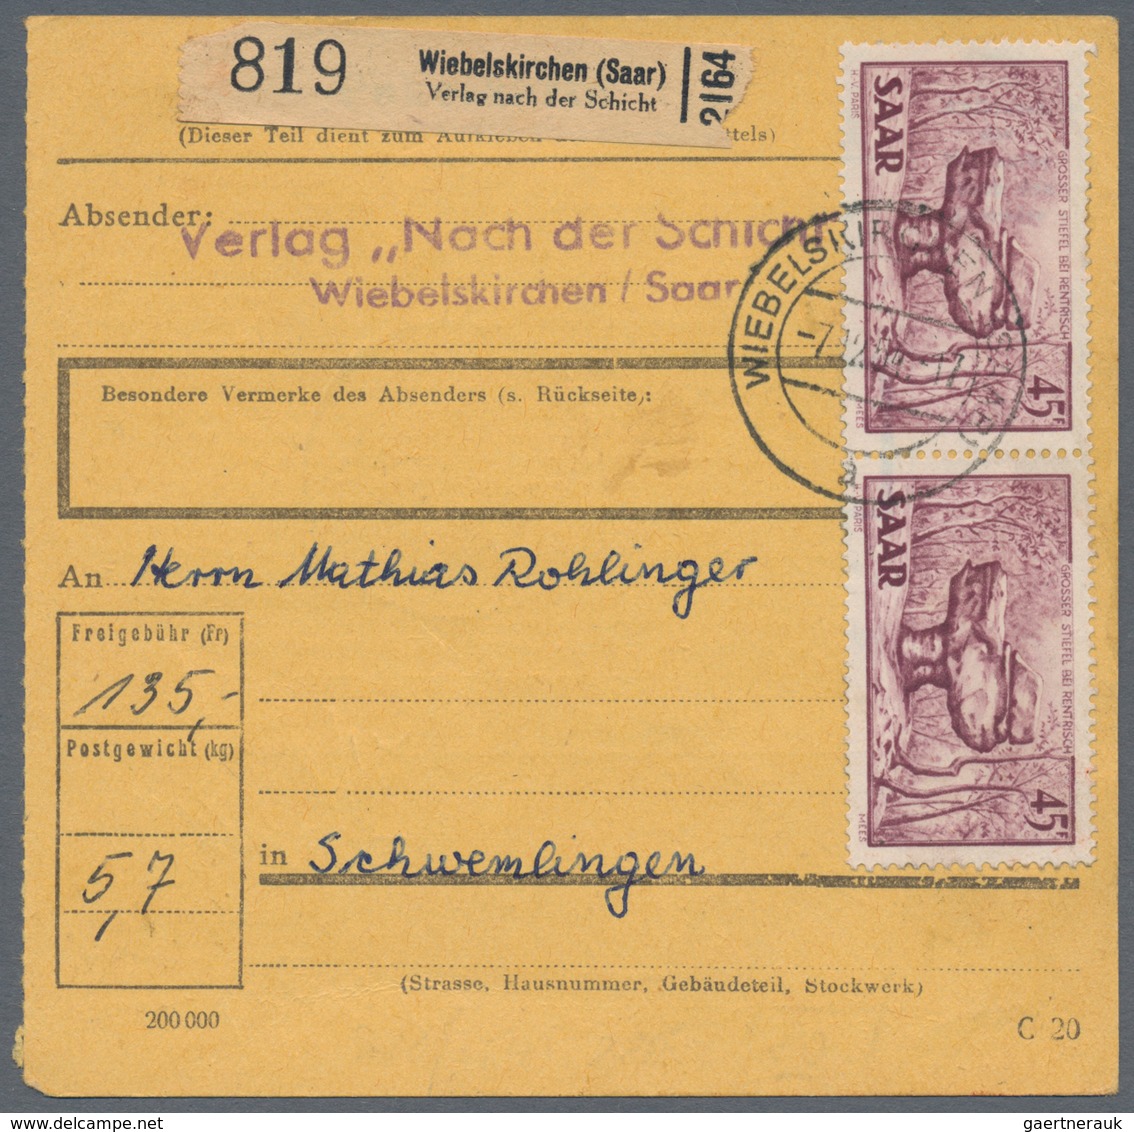 Deutsche Abstimmungsgebiete: Saargebiet: 1920/1958, Alt- und Neusaar, vielseitige Partie von ca. 240